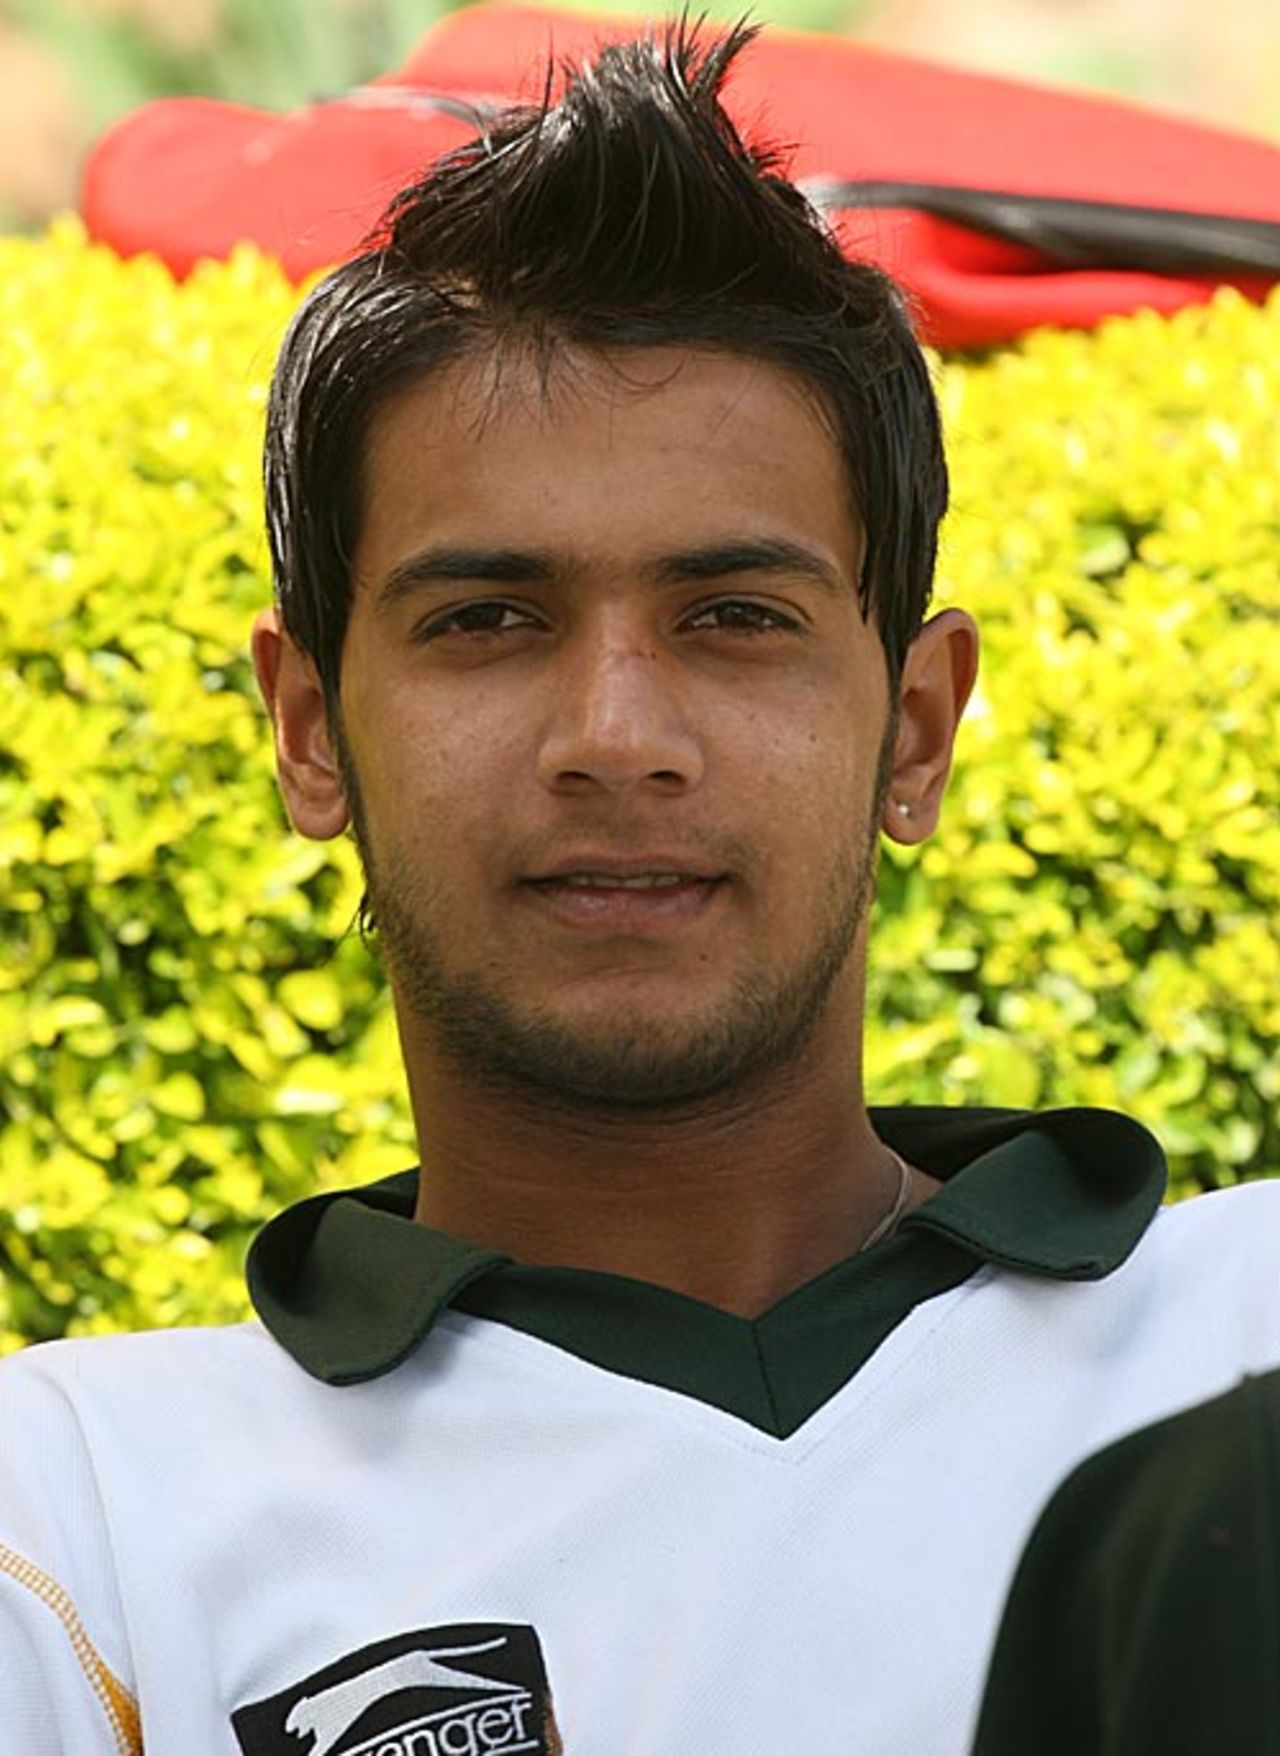 Imad Wasim, player portrait, August 29, 2009